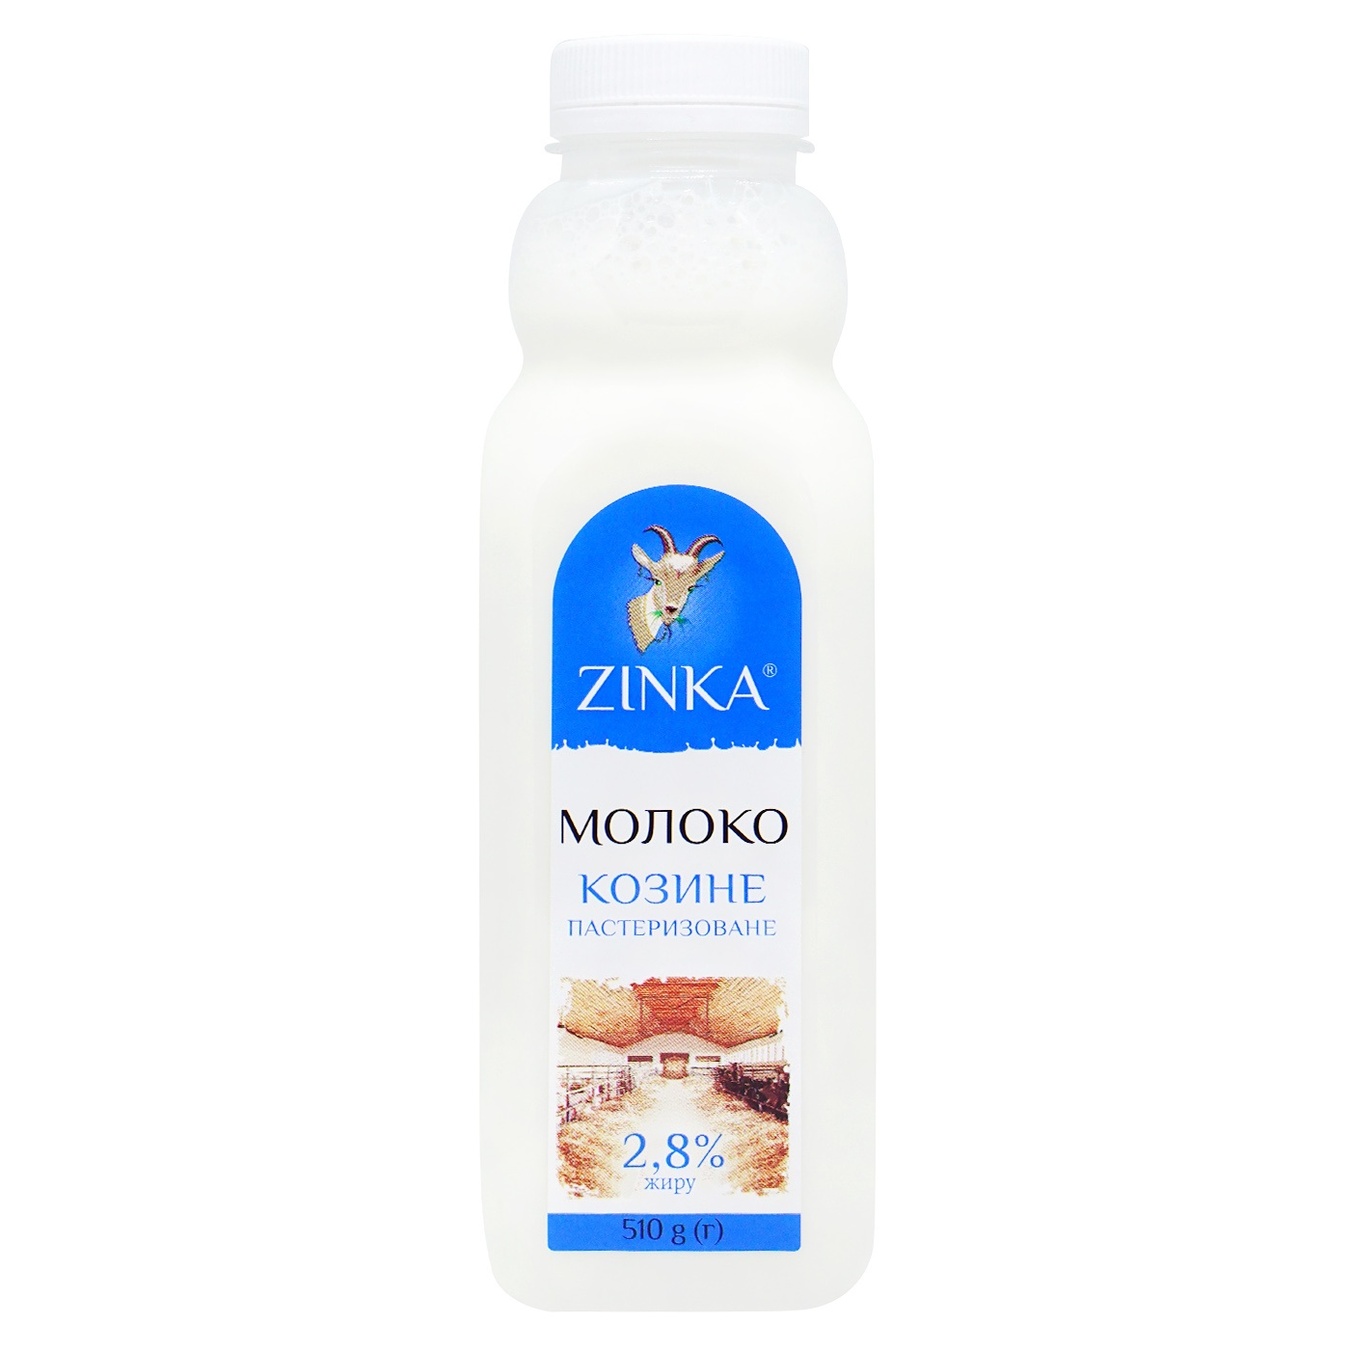 Milk Zinka Goat Pasteurized 2,8% 510g